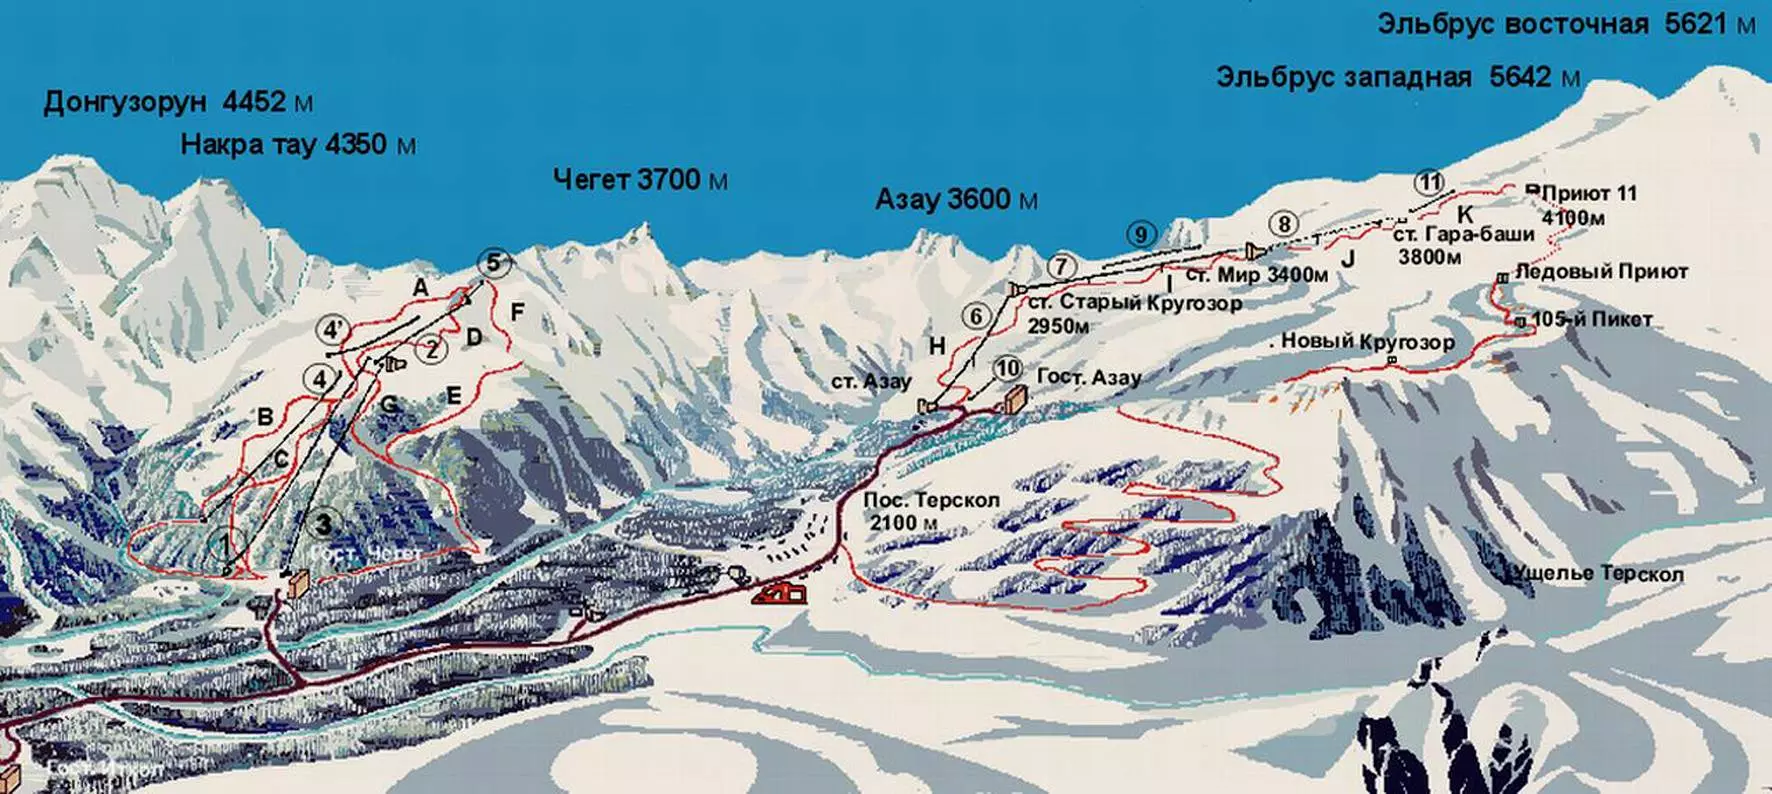 Домбай - история горнолыжного курорта на северном кавказе